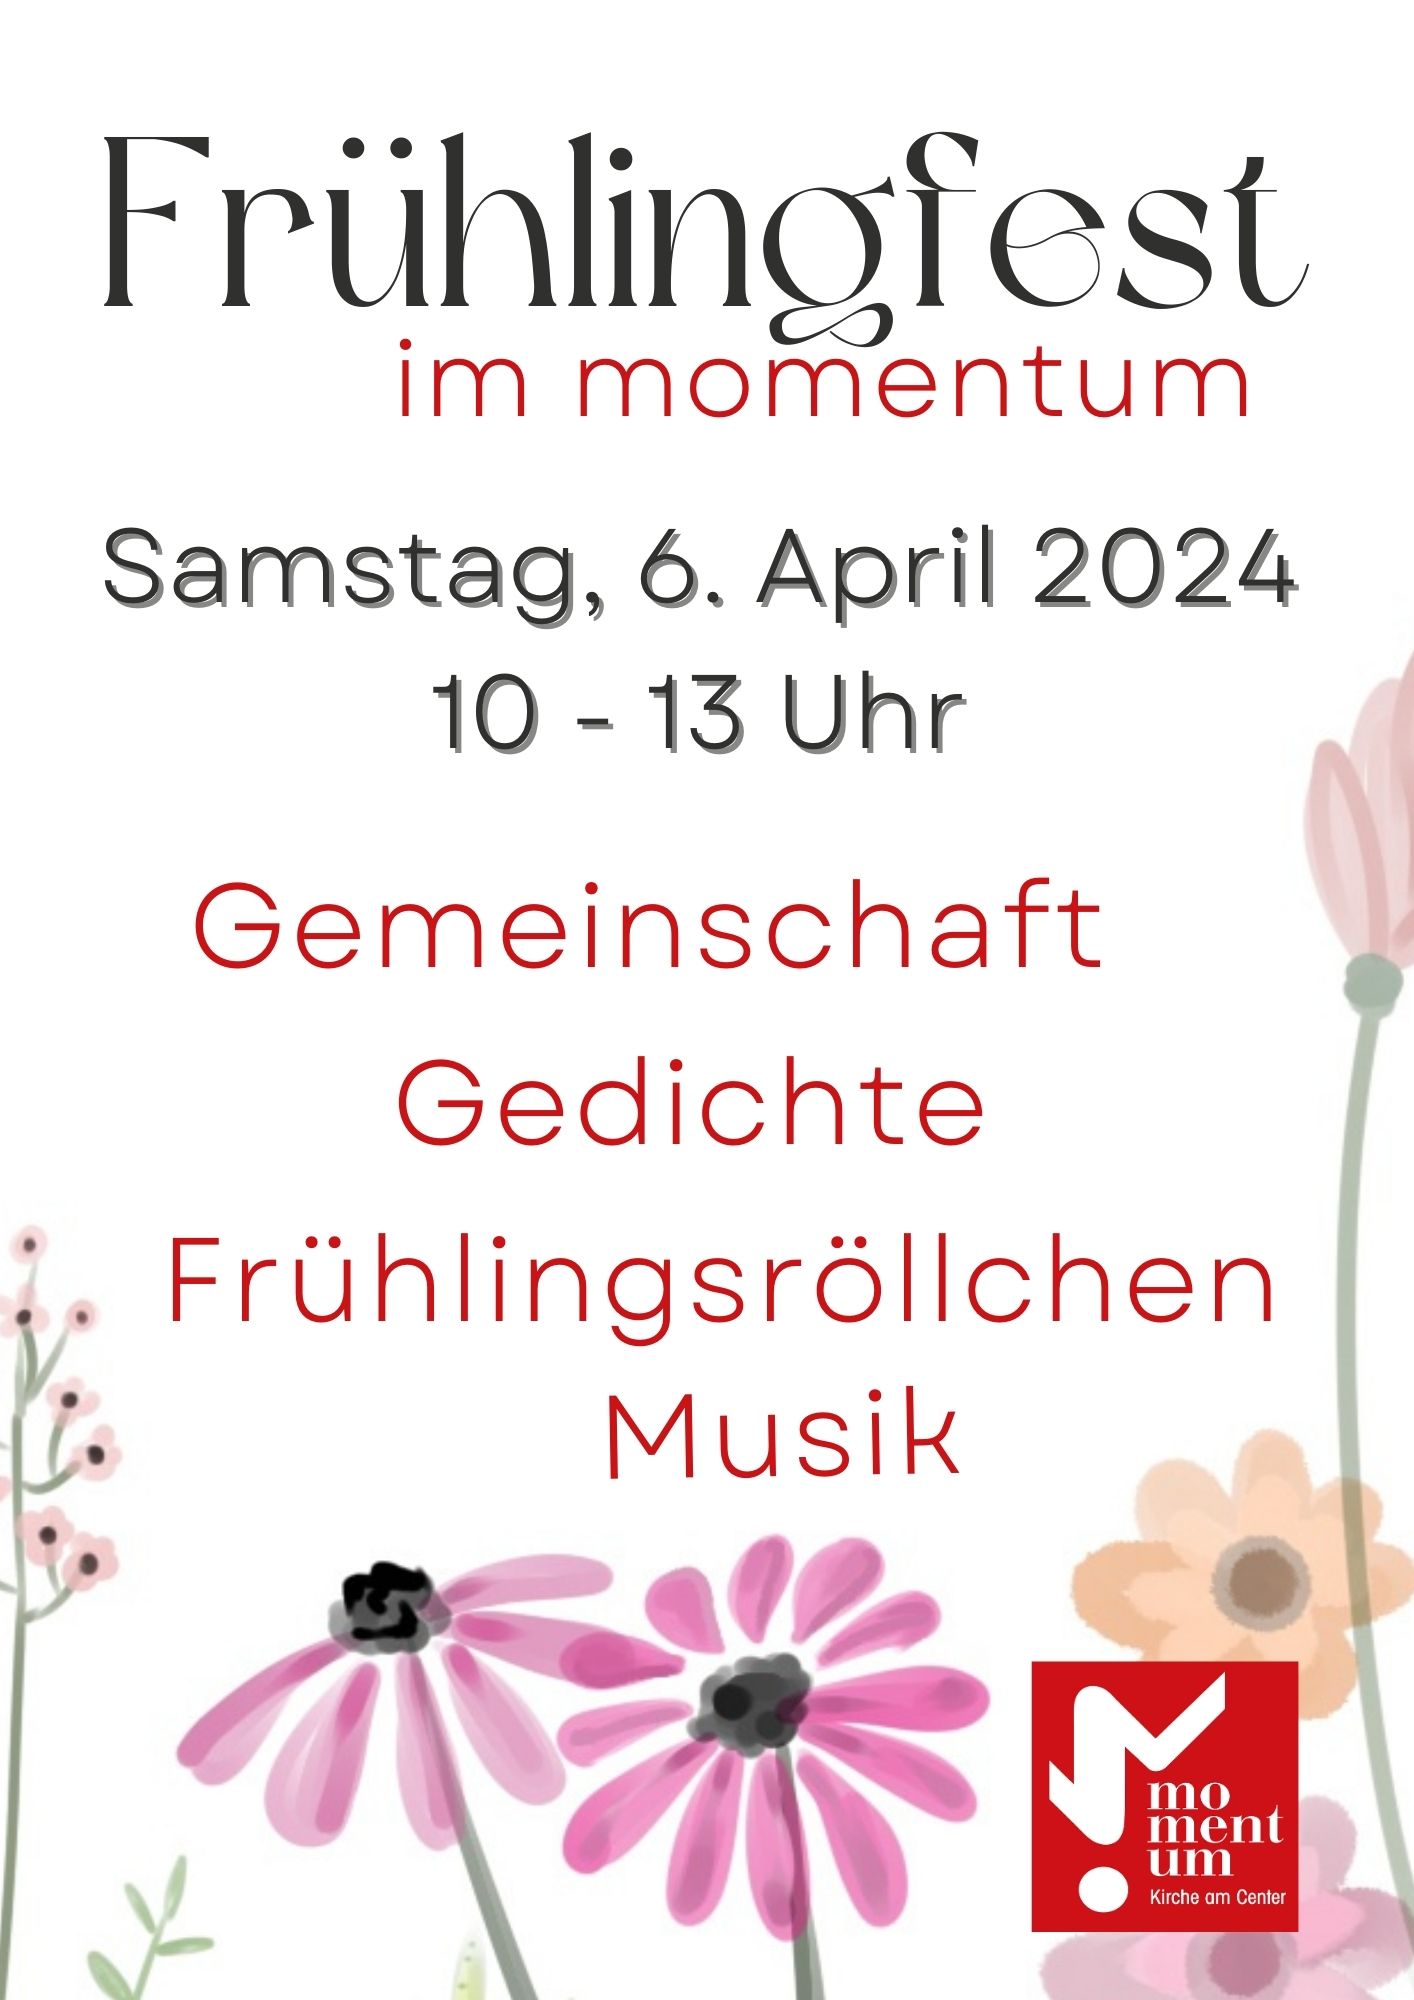 Frühlingsfest im momentum am 06.04.2024